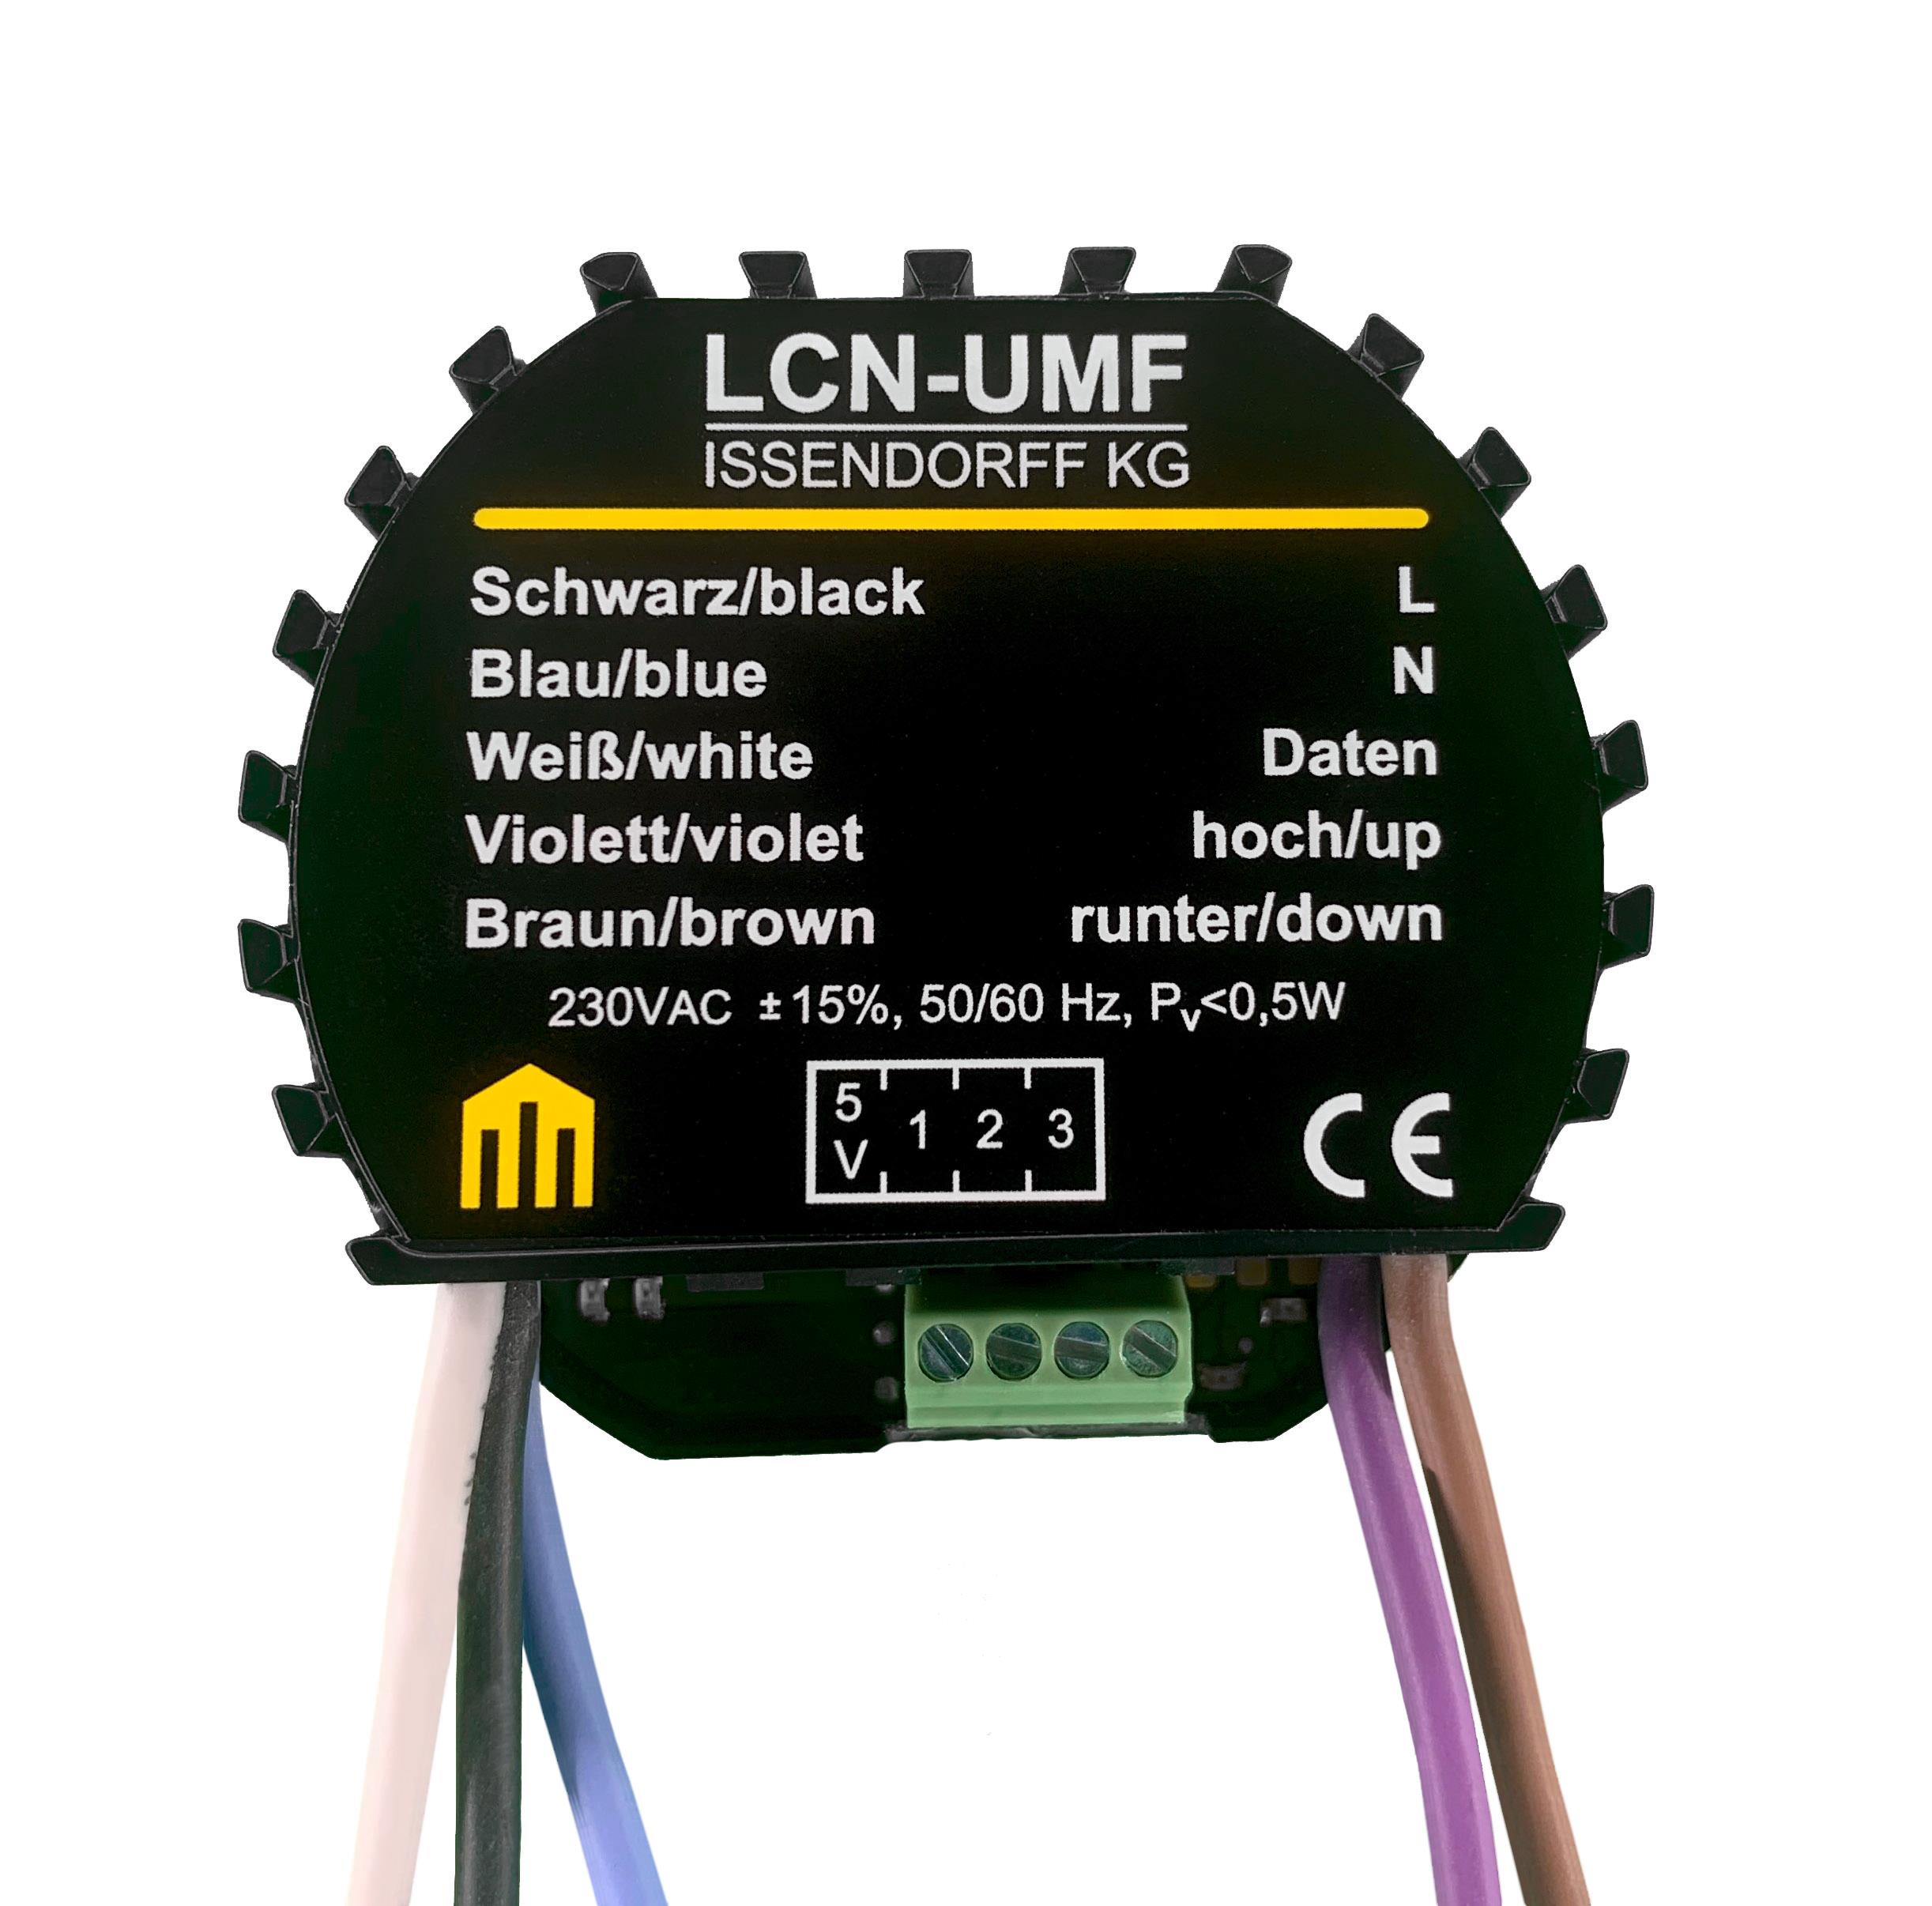 LCN-UMF